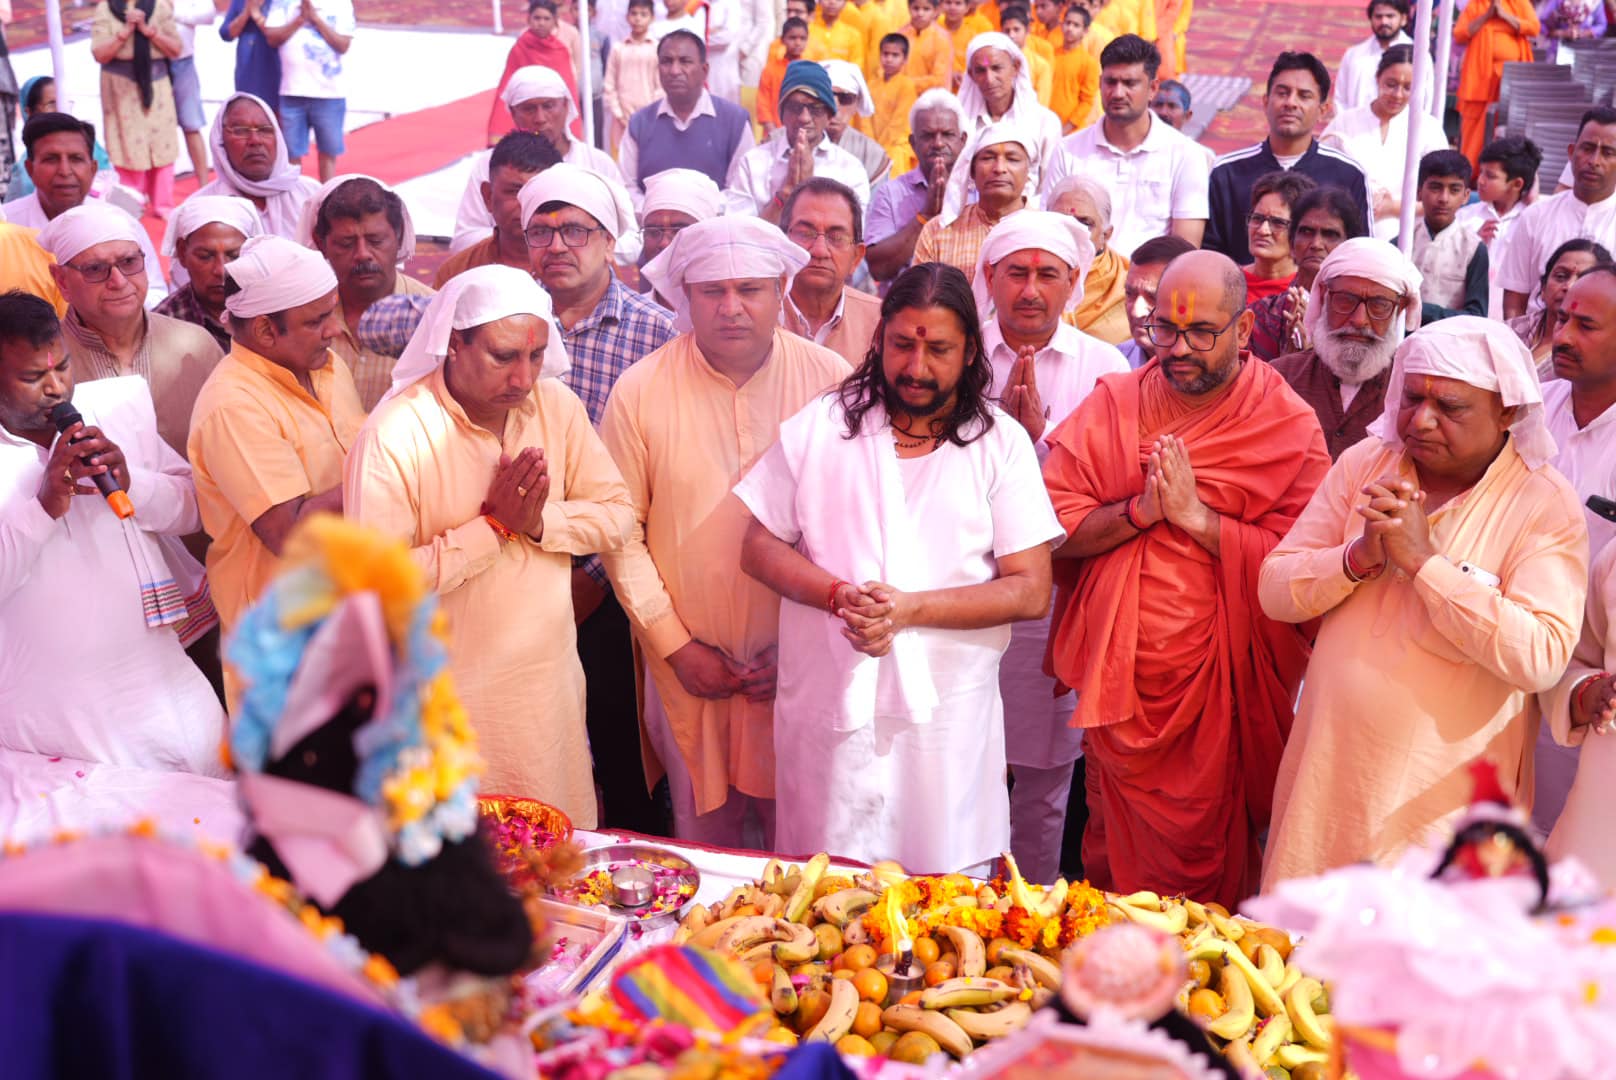 Enjoying Holi with Shri Shri Kripa Bihari ji at Geeta Gyan Sansthanam